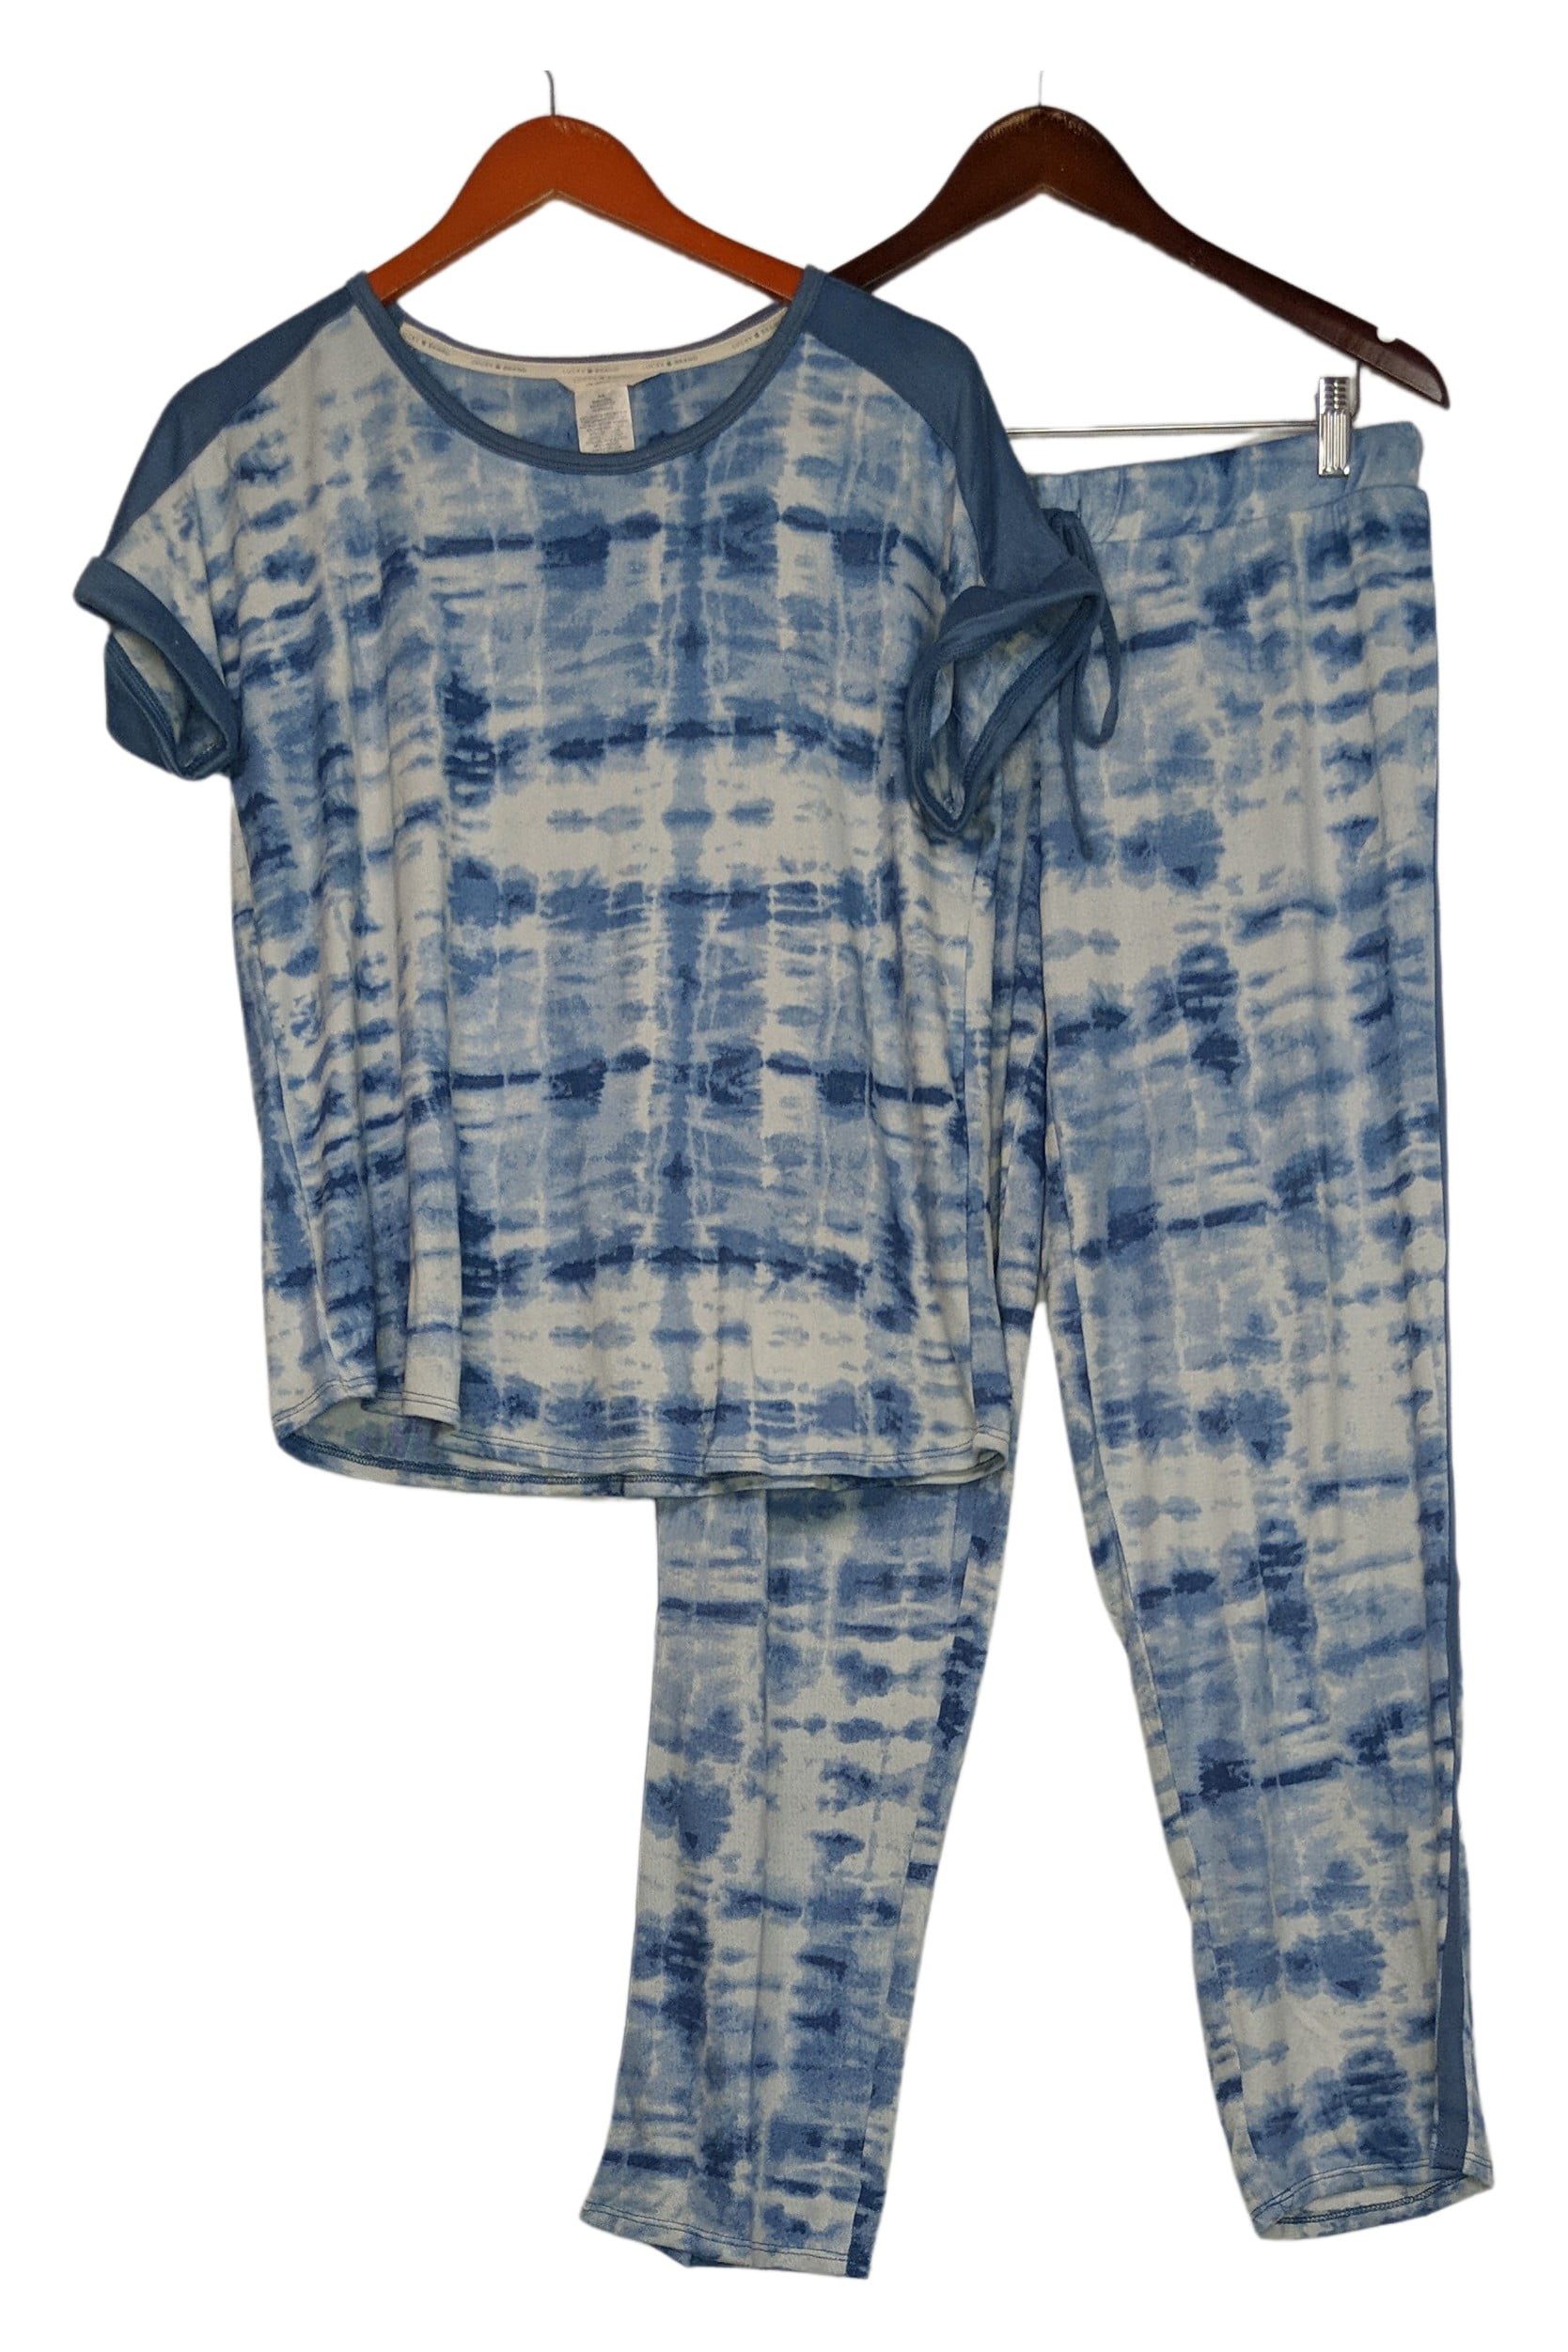 Lucky brand pajama set - Gem